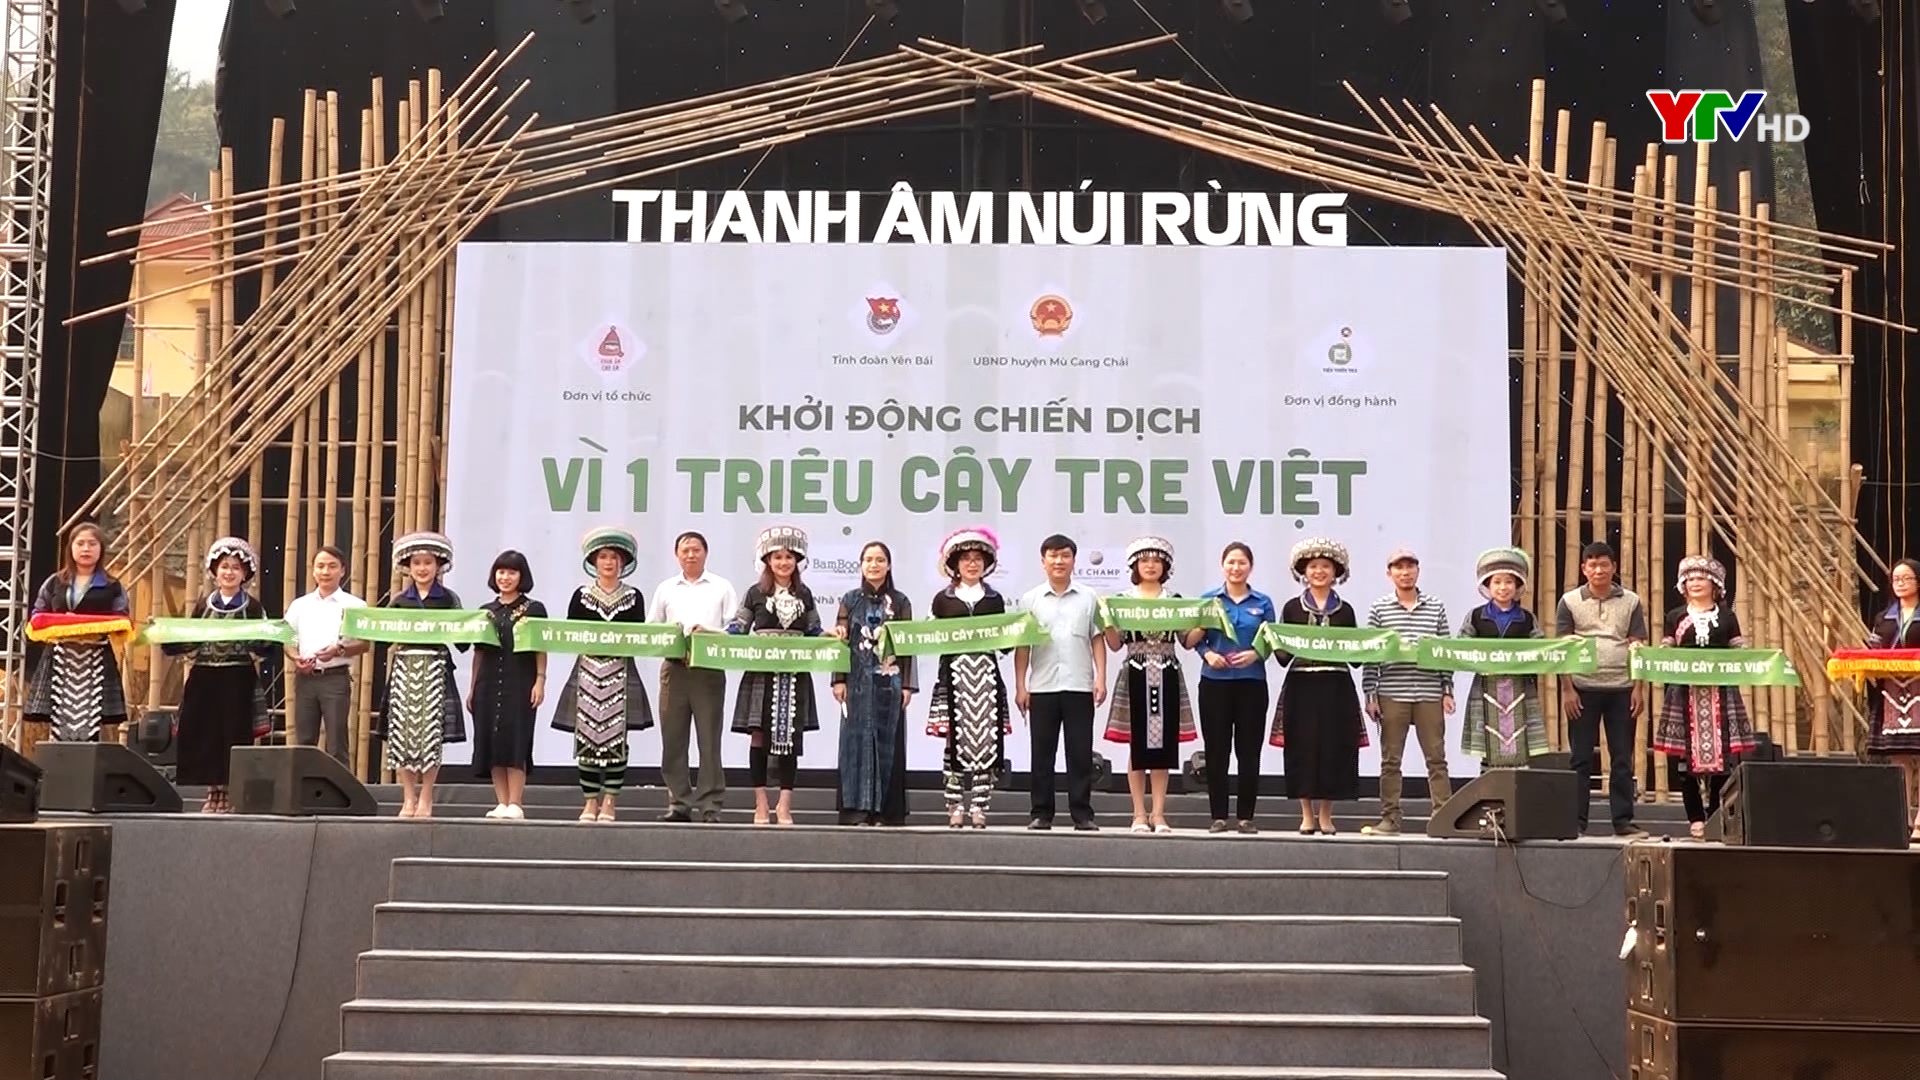 Khởi động chiến dịch vì 1 triệu cây tre Việt tại huyện Mù Cang Chải